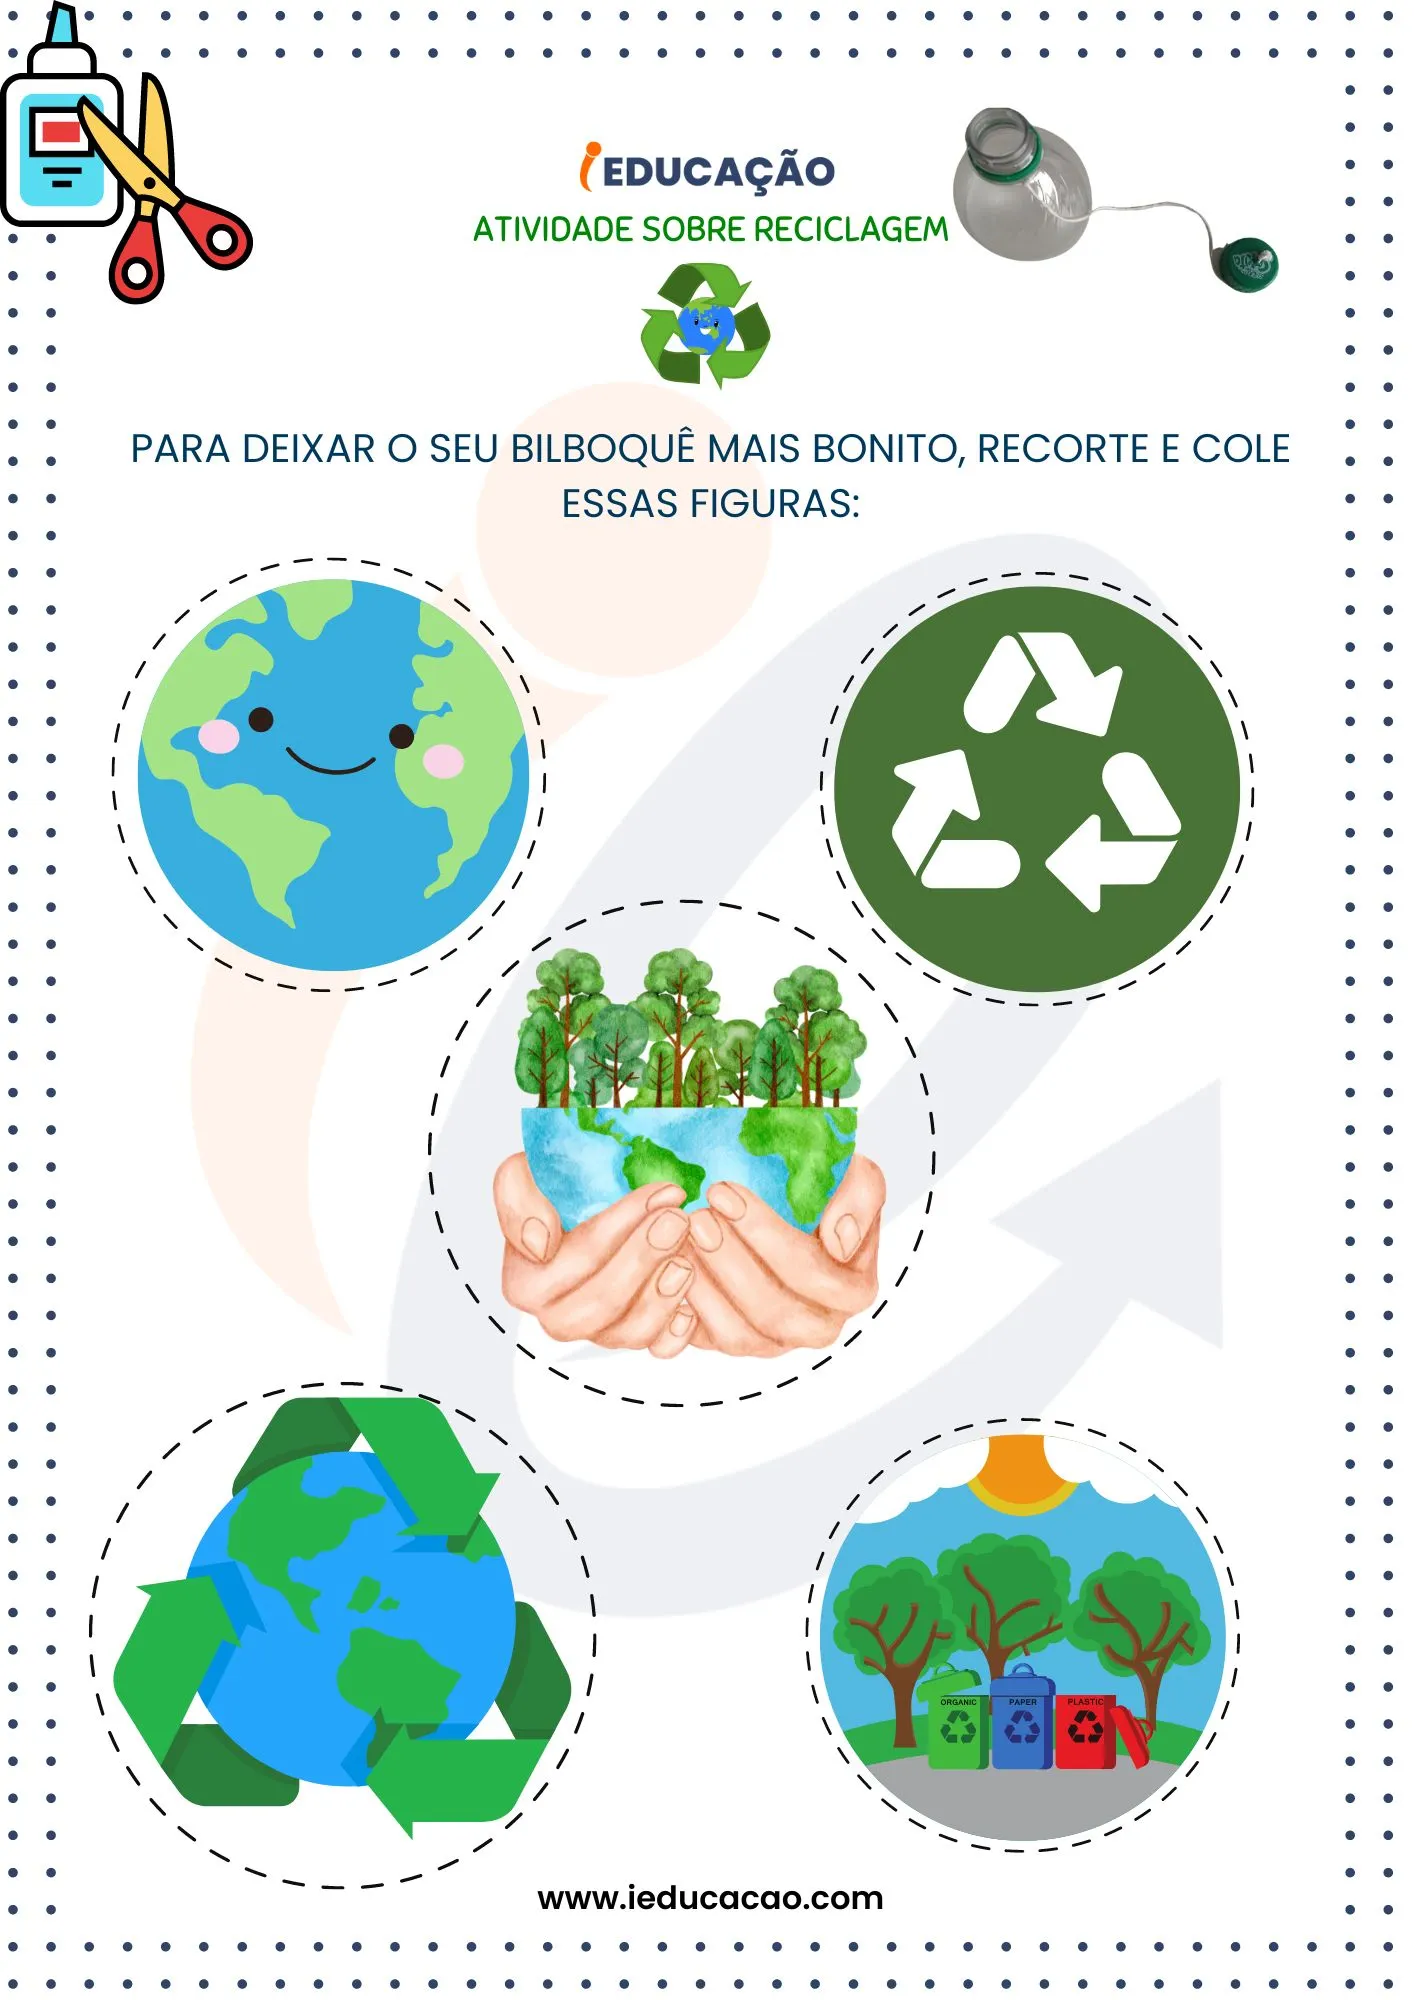 Atividades Sobre Reciclagem na Educação Infantil-Recurso para Recortar